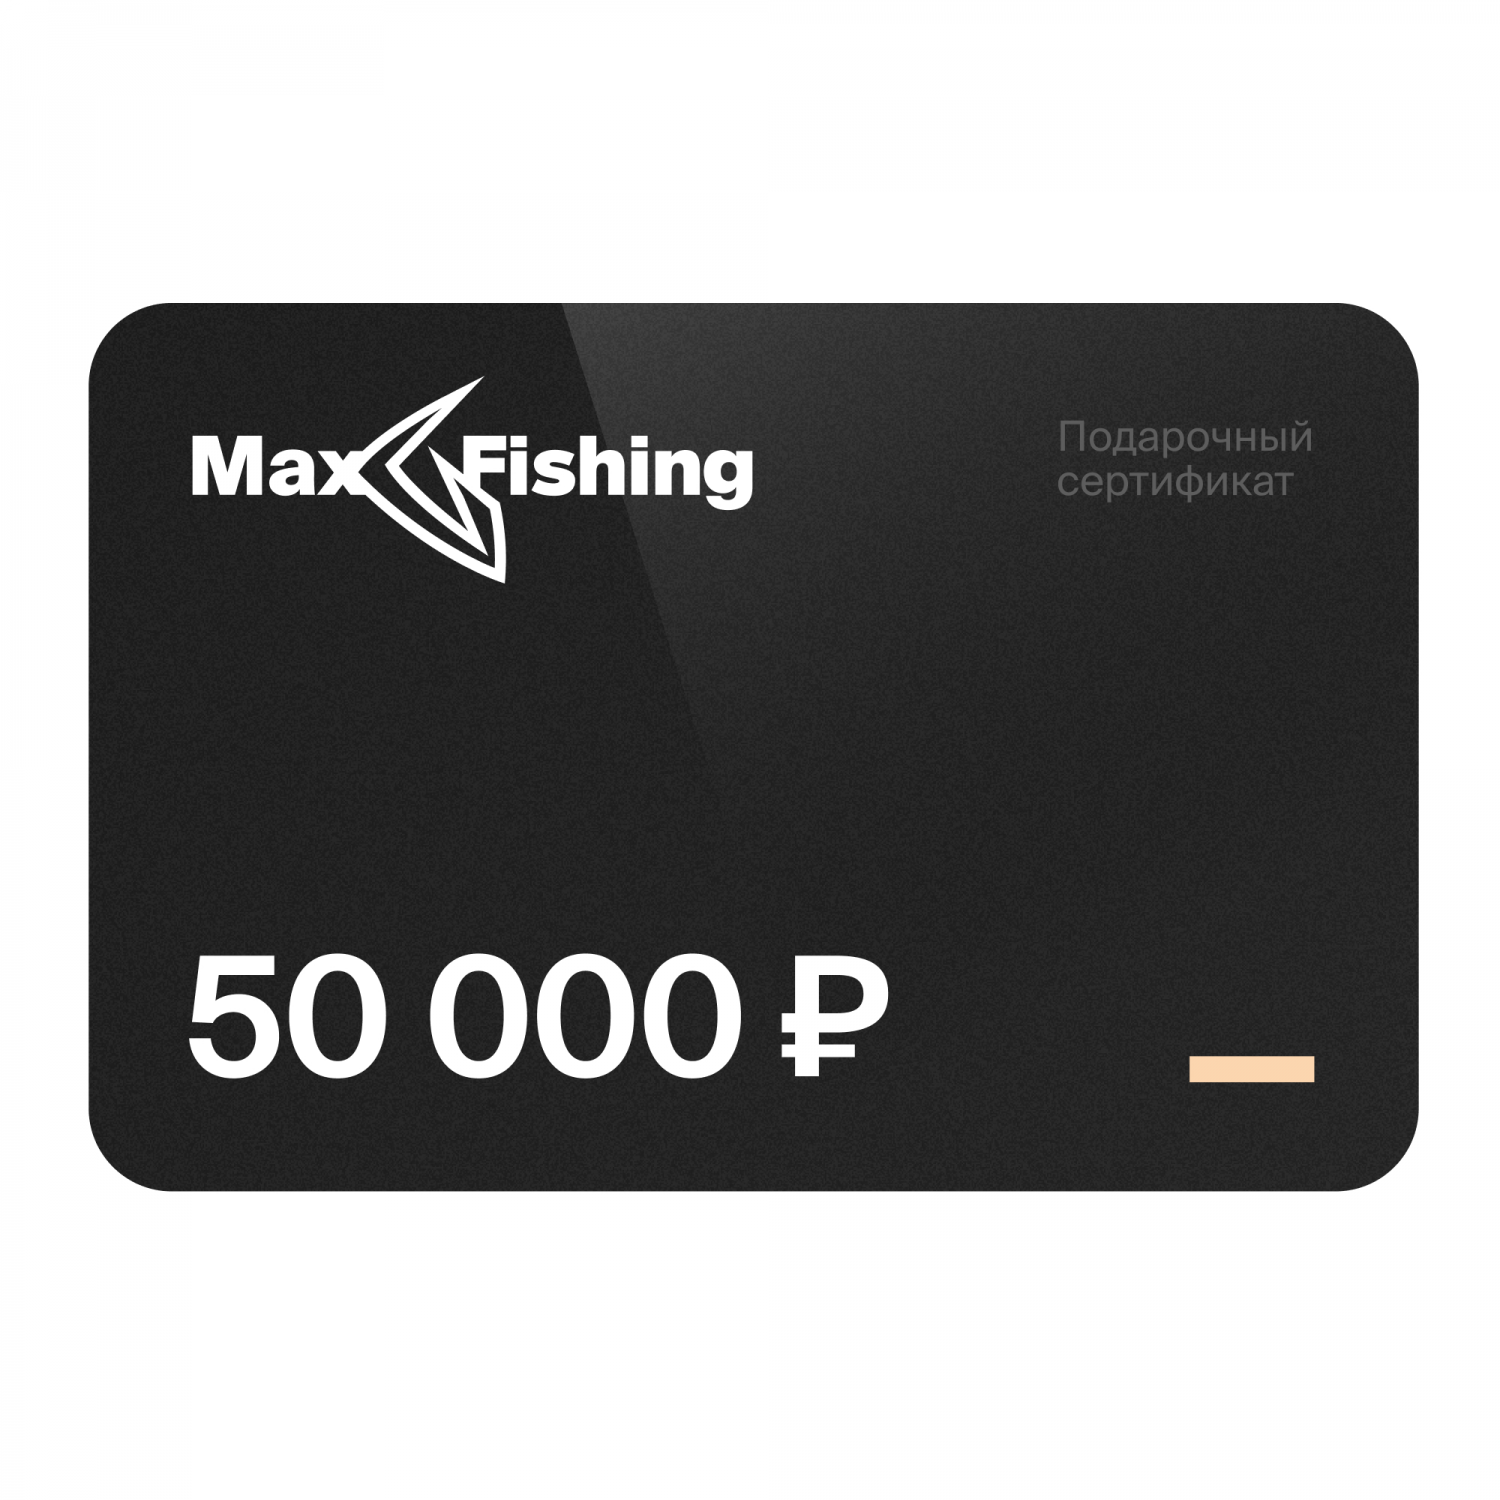 Подарочный сертификат MaxFishing 50 000 ₽ подарочный сертификат на 10 000 рублей